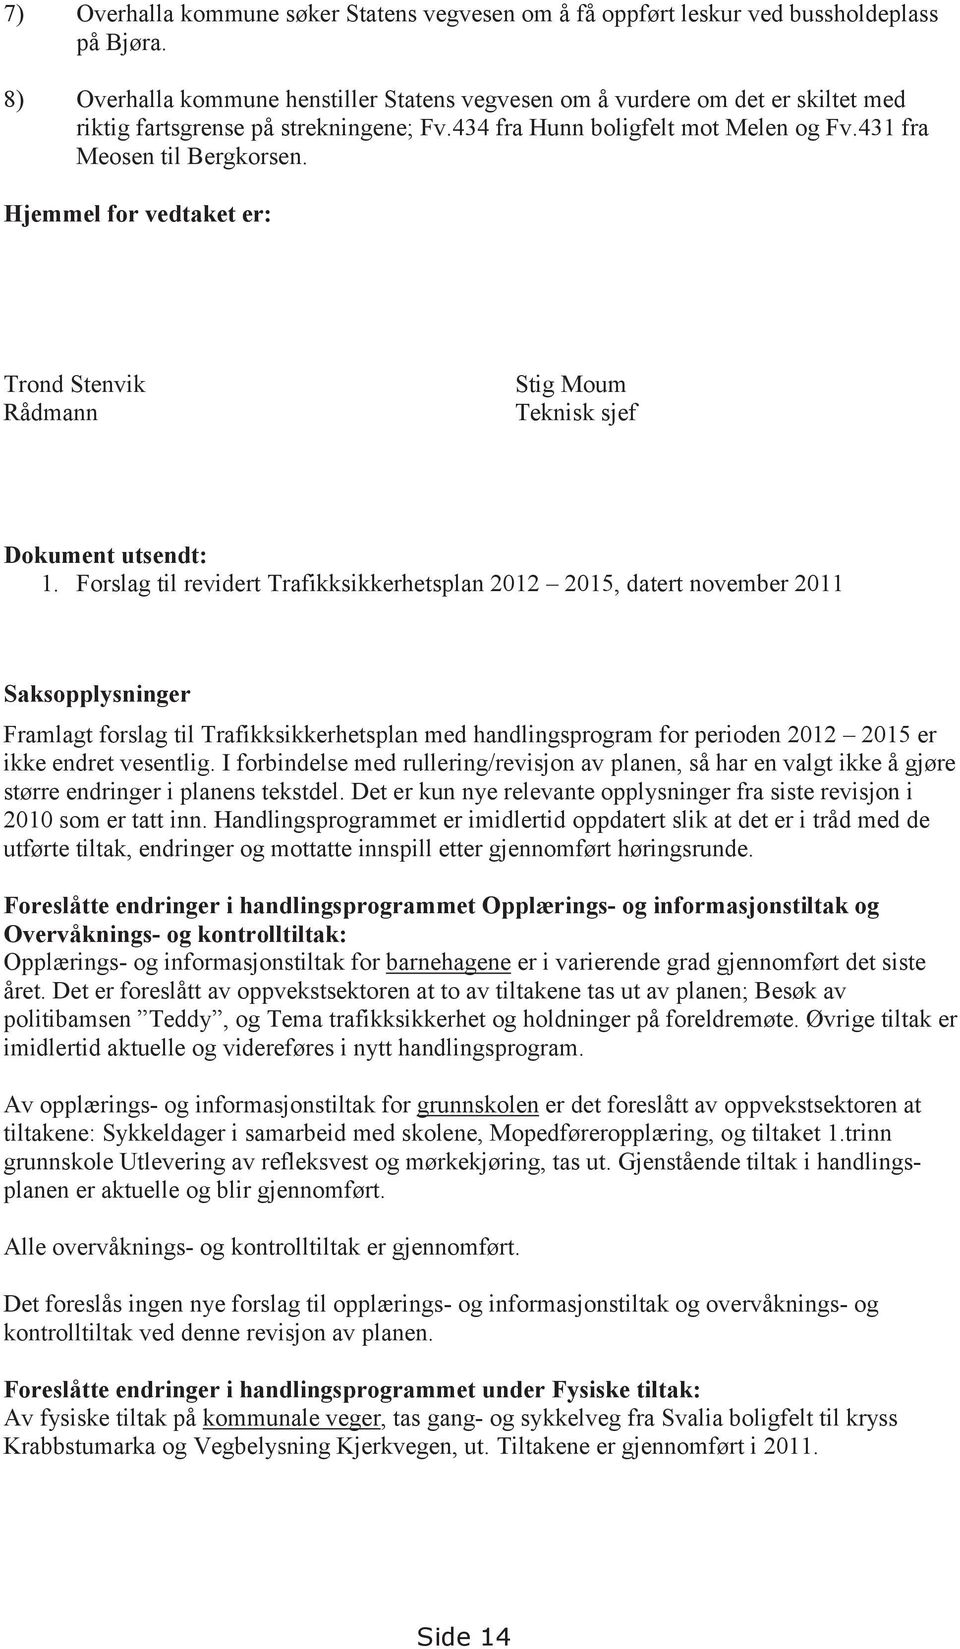 Hjemmel for vedtaket er: Trond Stenvik Rådmann Stig Moum Teknisk sjef Dokument utsendt: 1.